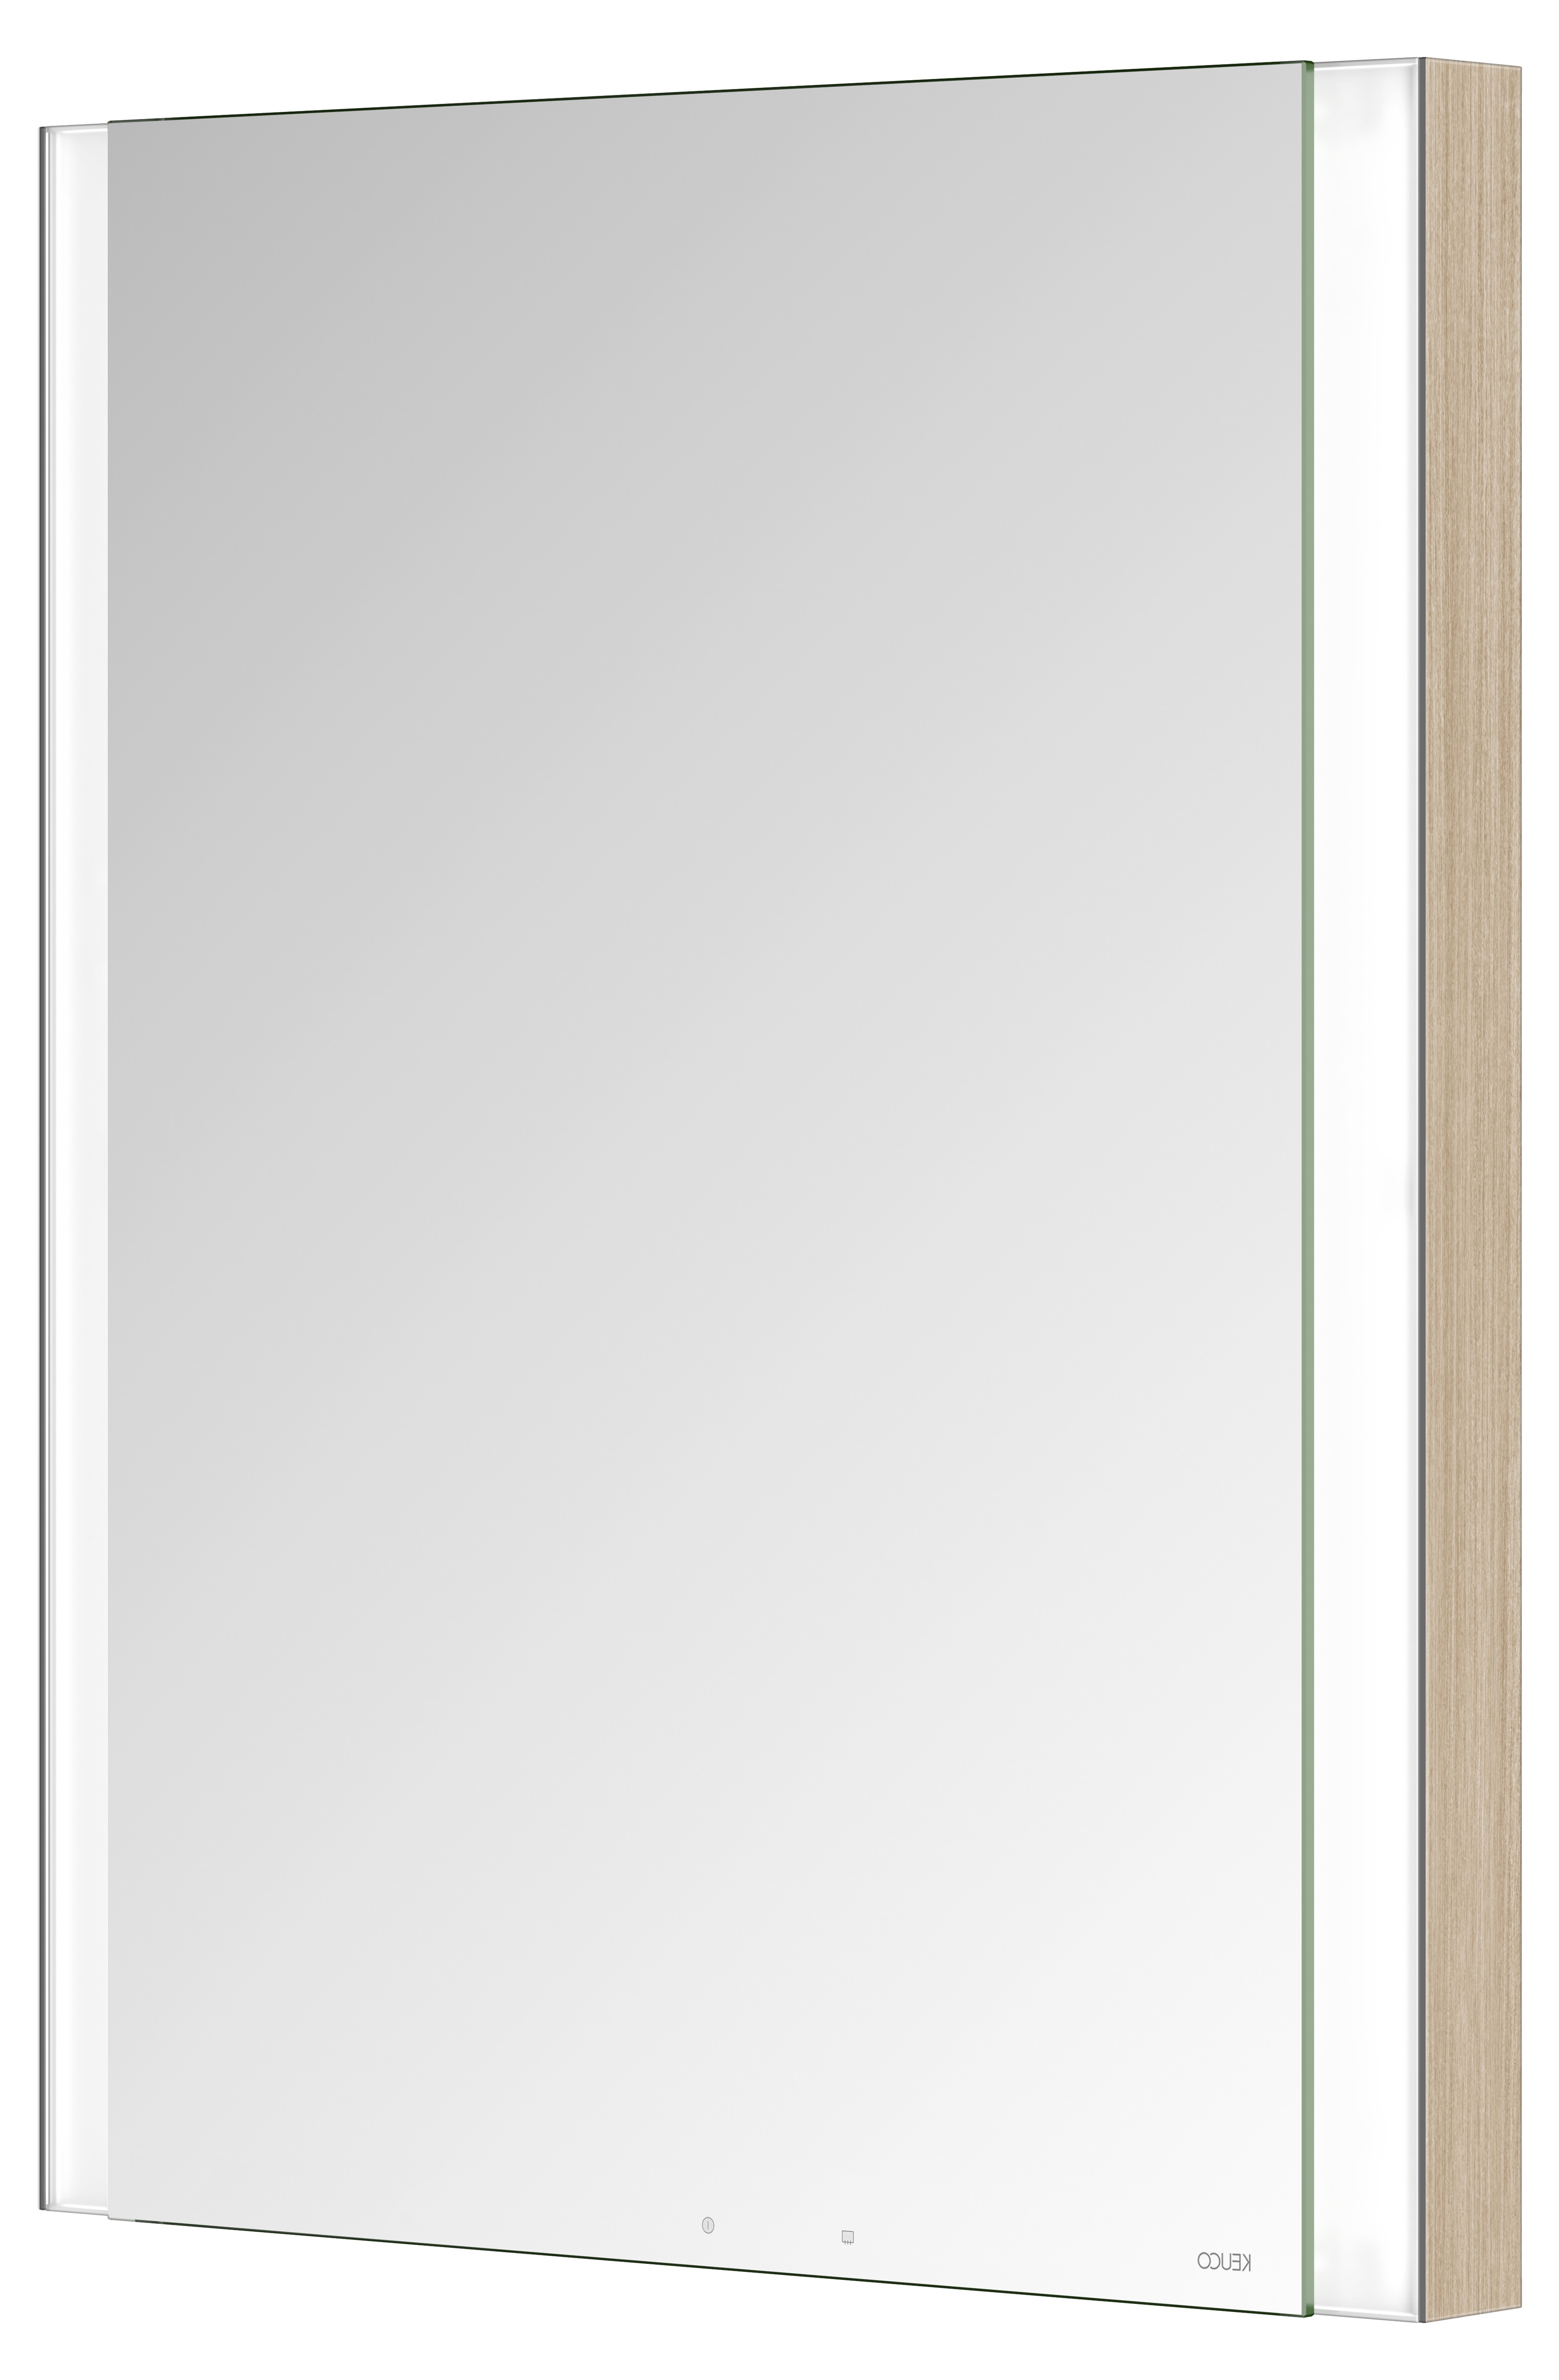 Правый зеркальный шкаф с подсветкой и подогревом для встраиваемого монтажа KEUCO Somaris 14511 851101 115 мм х 600 мм х 710 мм, с 1 поворотной дверцей, цвет корпуса под Светлый дуб